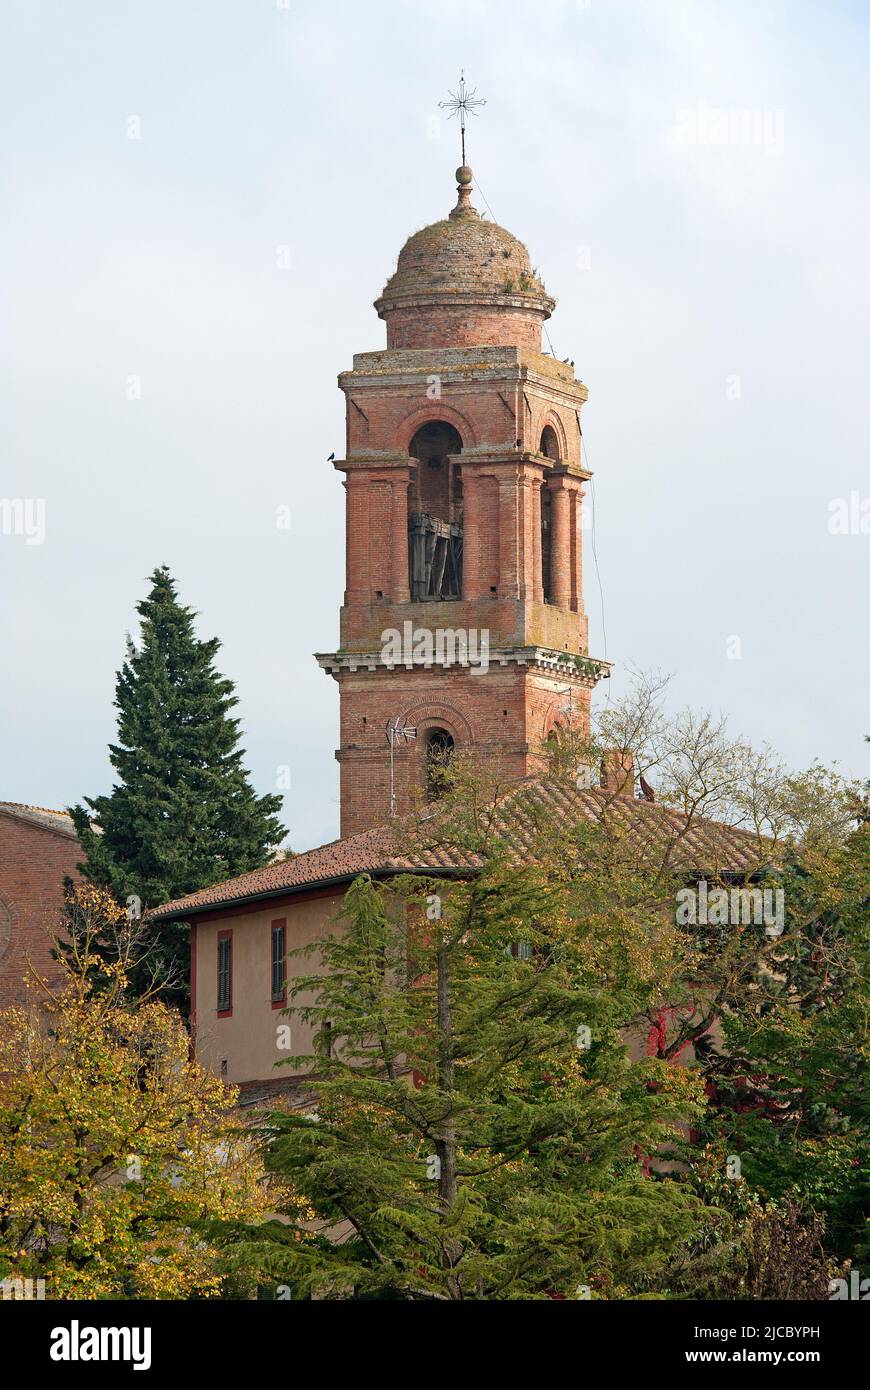 Clocher de l'église Santa Maria dei Servi, Città della Pieve, Ombrie, Italie Banque D'Images